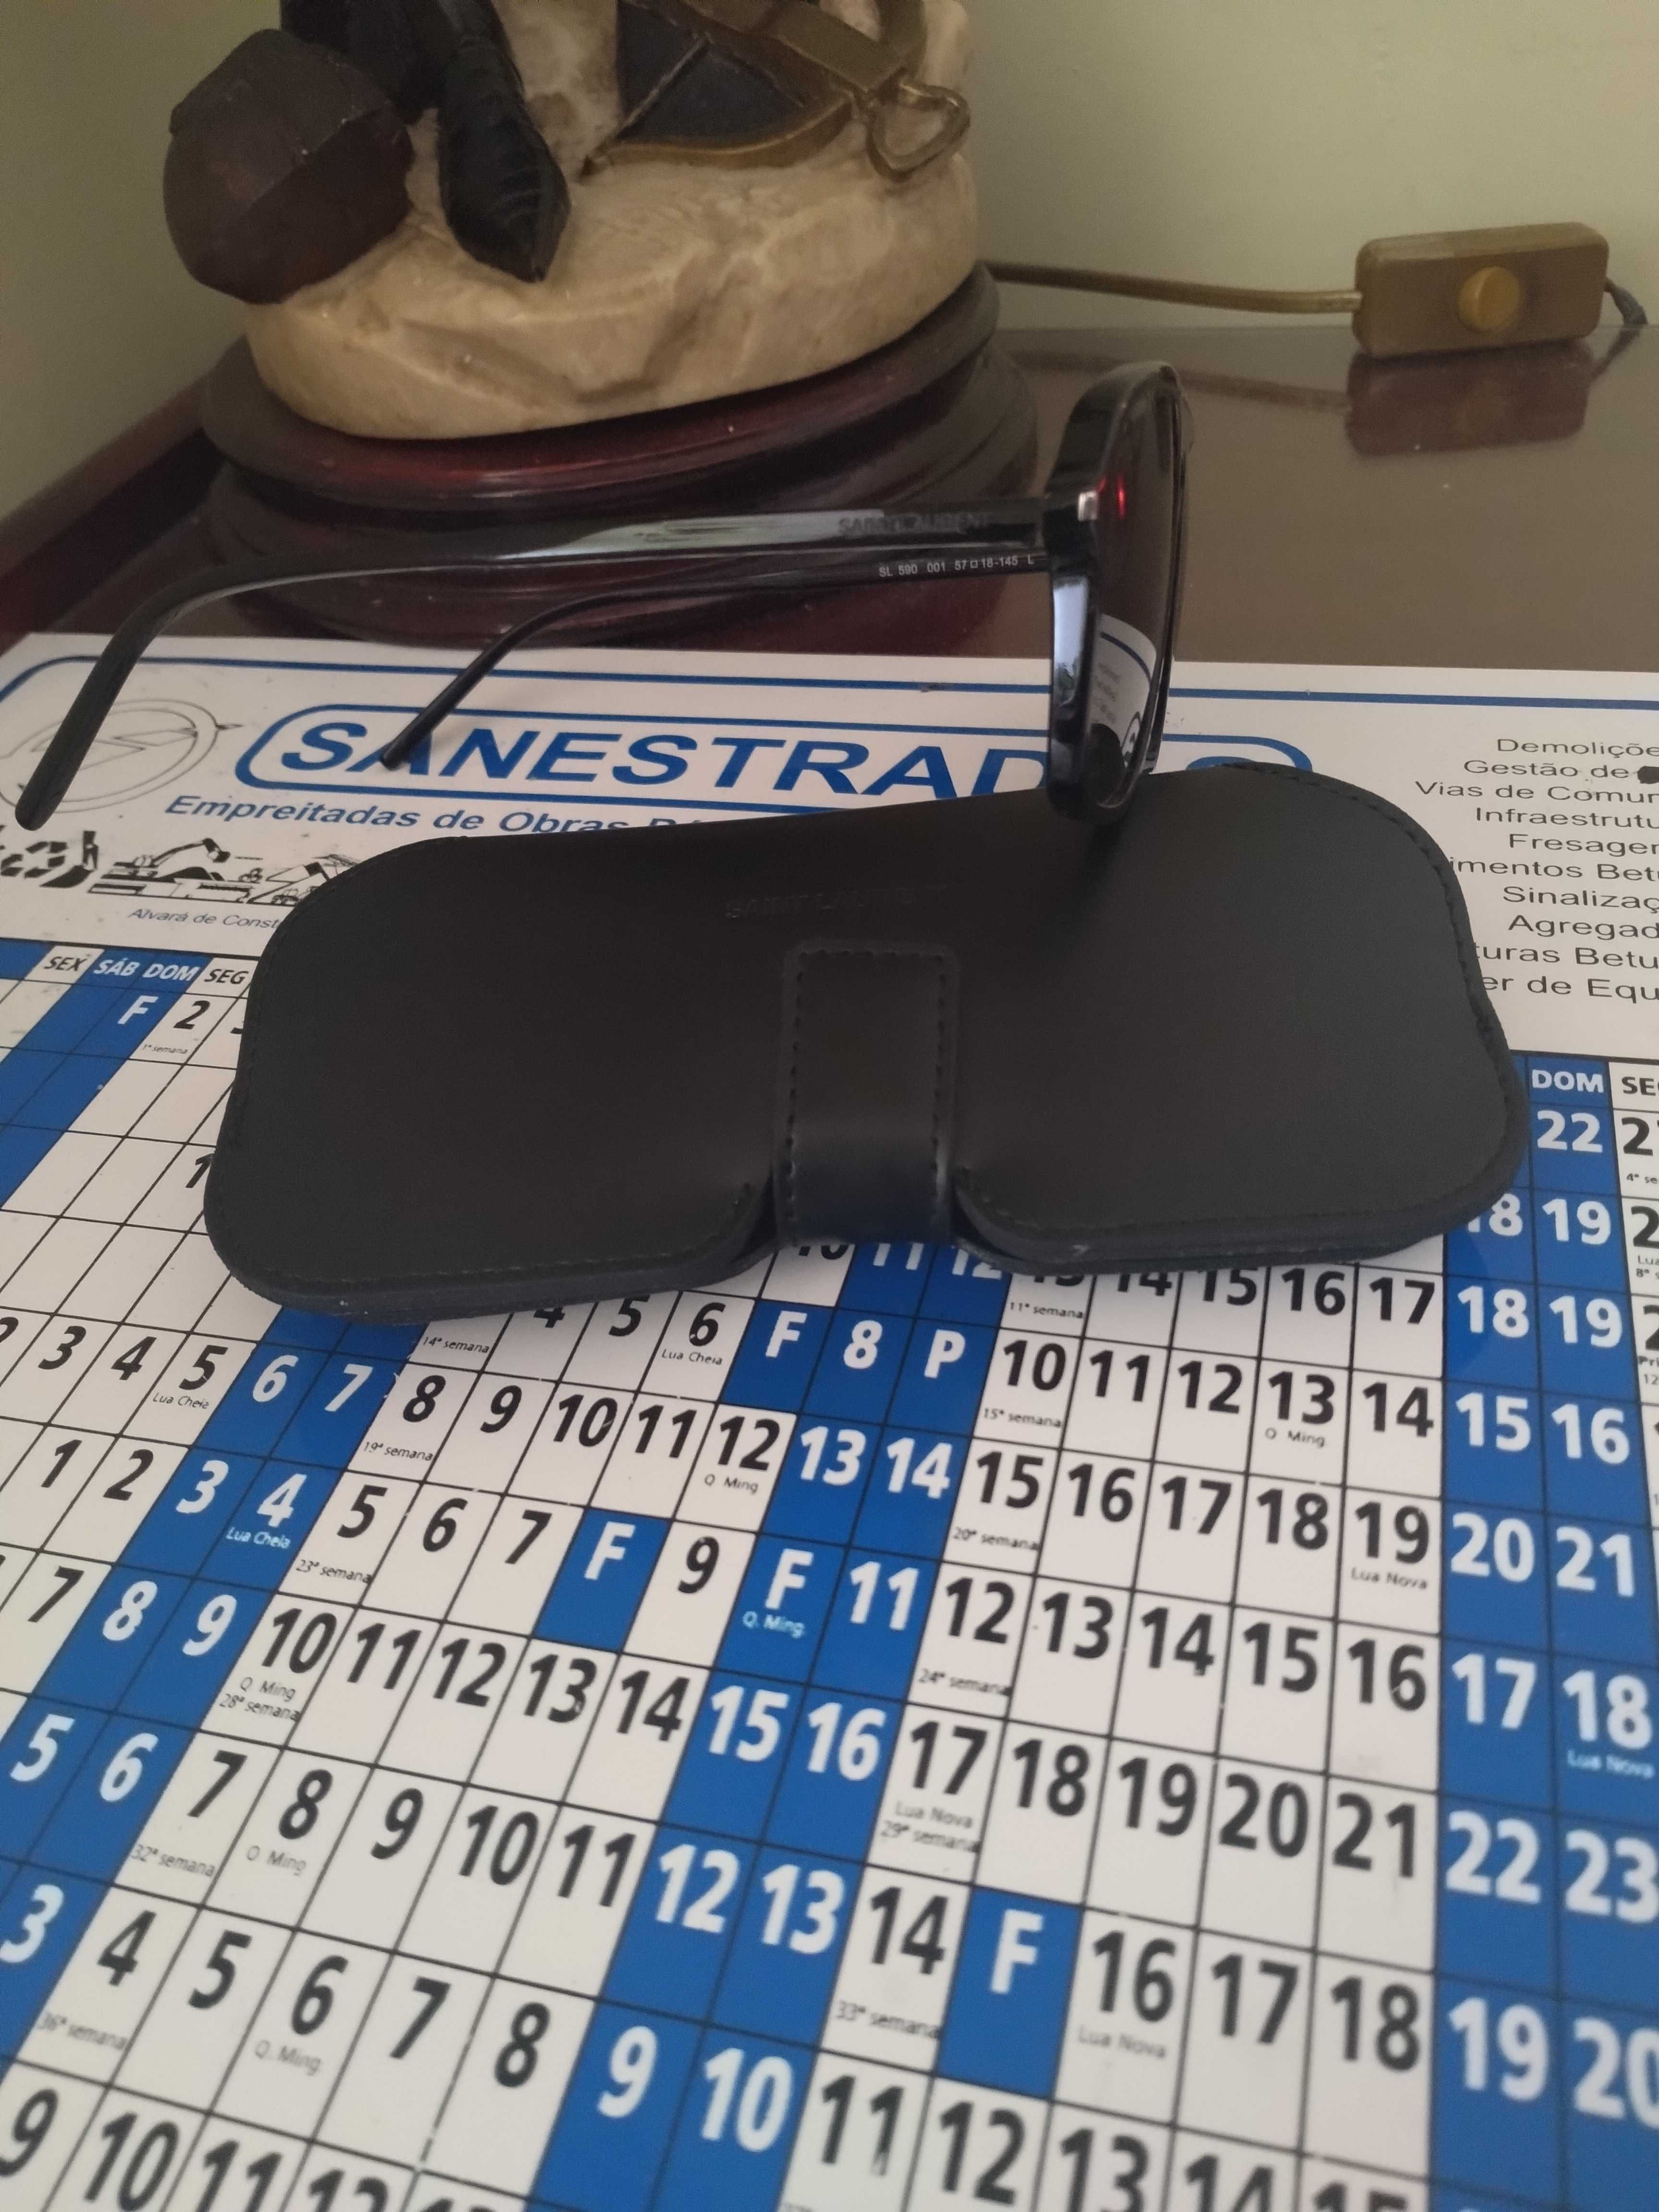 Óculos da Prada e Saint Laurent